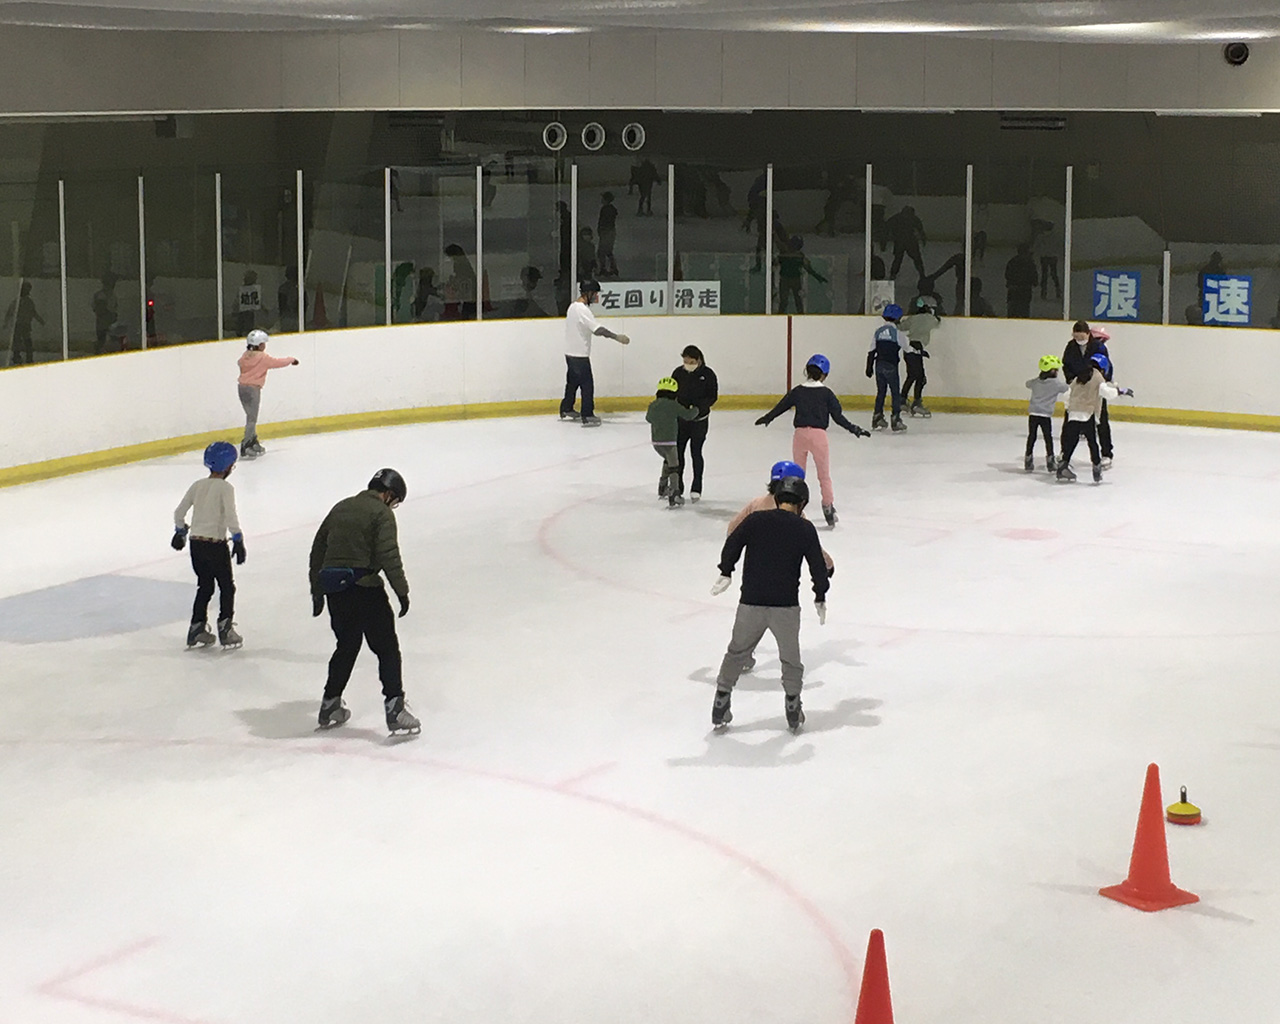 夏休み企画「初めてのアイススケート教室」 in 浪速スポーツセンターアイススケート場